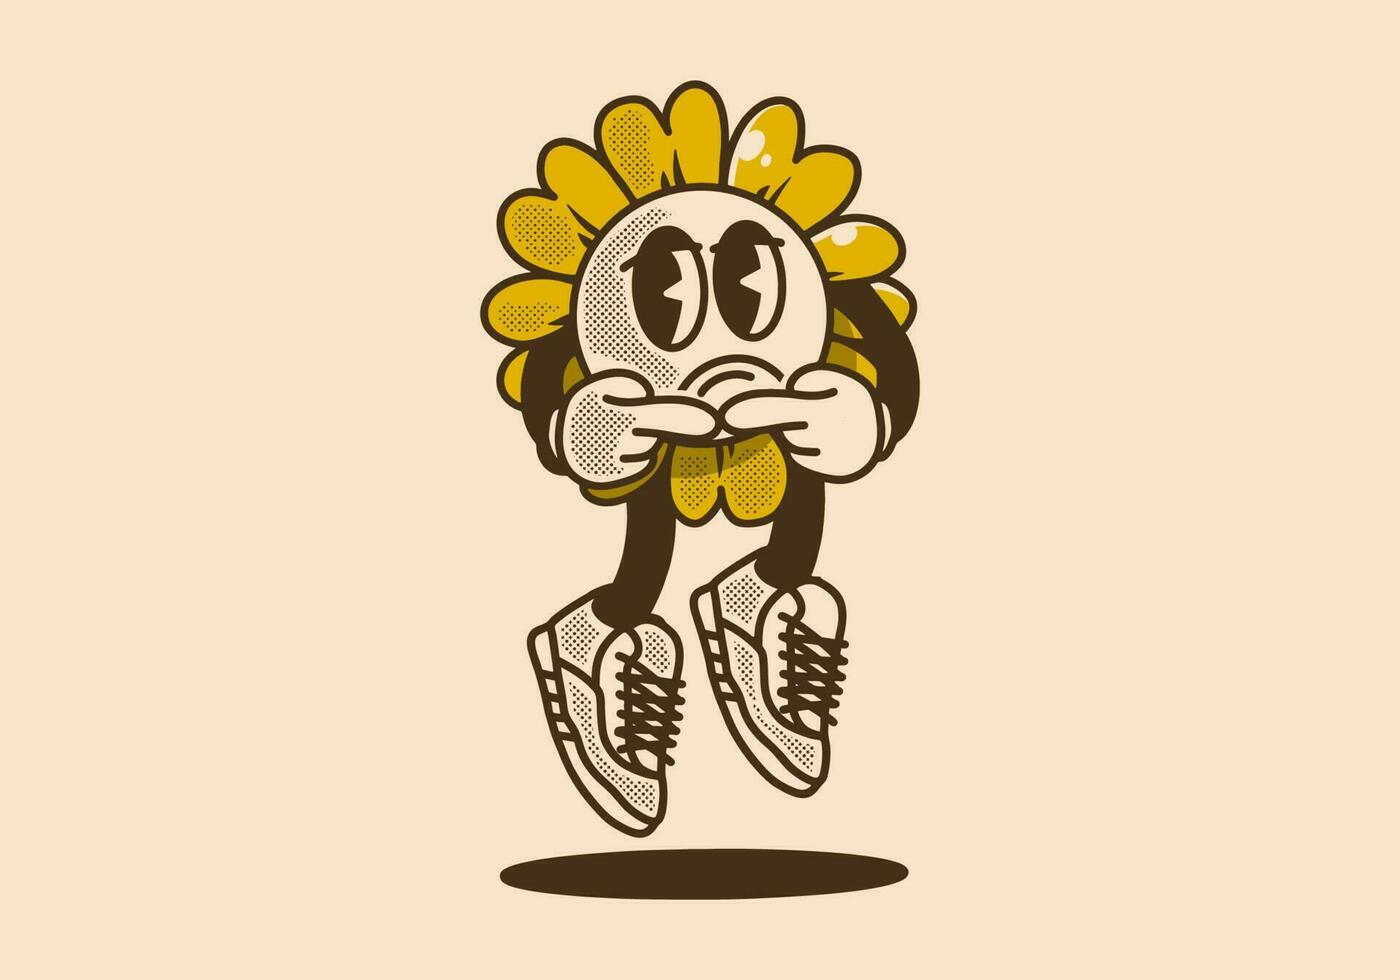 zonnebloem mascotte karakter met verdrietig uitdrukking vector